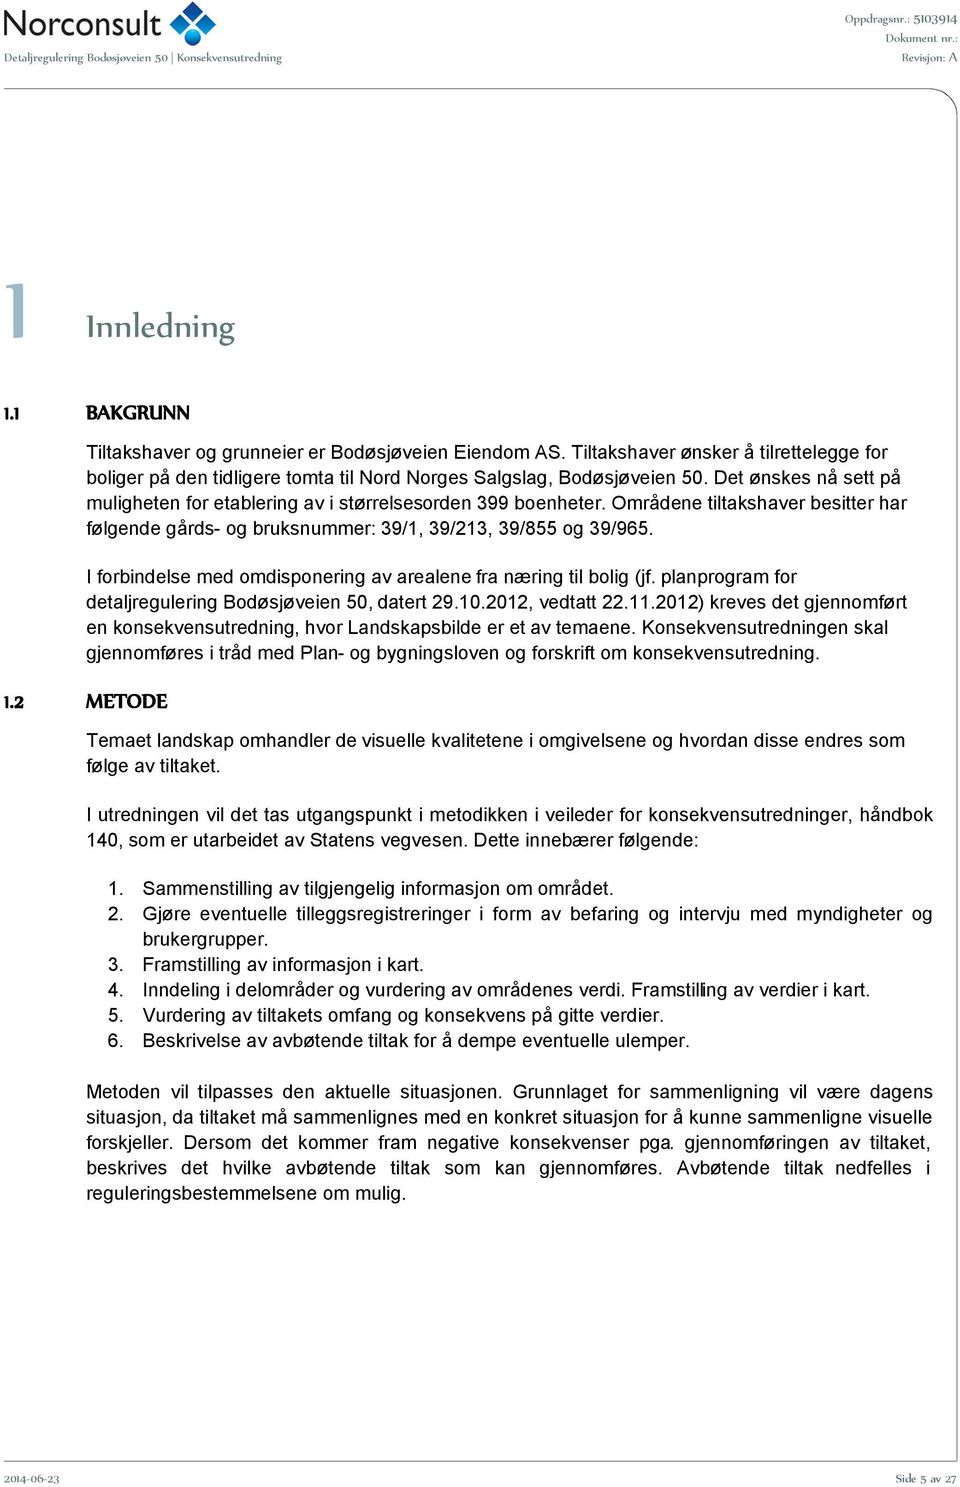 I forbindelse med omdisponering av arealene fra næring til bolig (jf. planprogram for detaljregulering Bodøsjøveien 50, datert 29.10.2012, vedtatt 22.11.